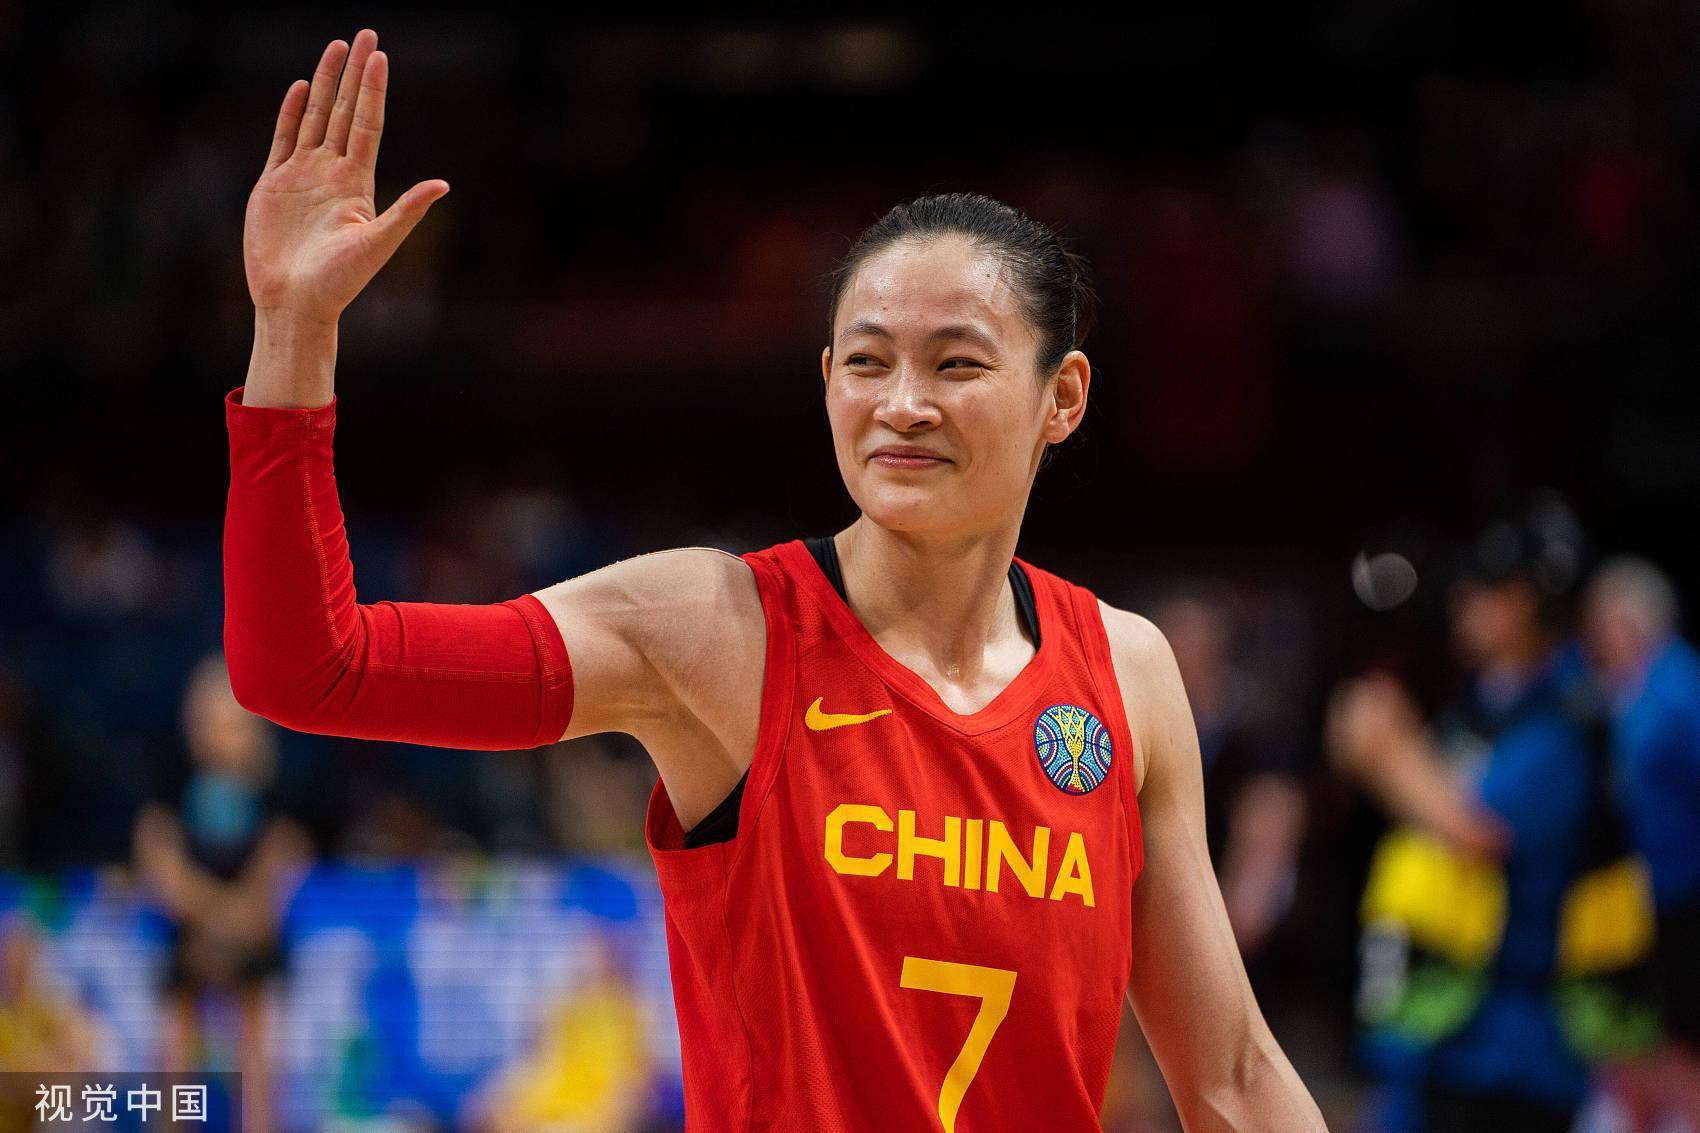 广州培养输送的女篮队长杨力维:荣誉属于中国篮球